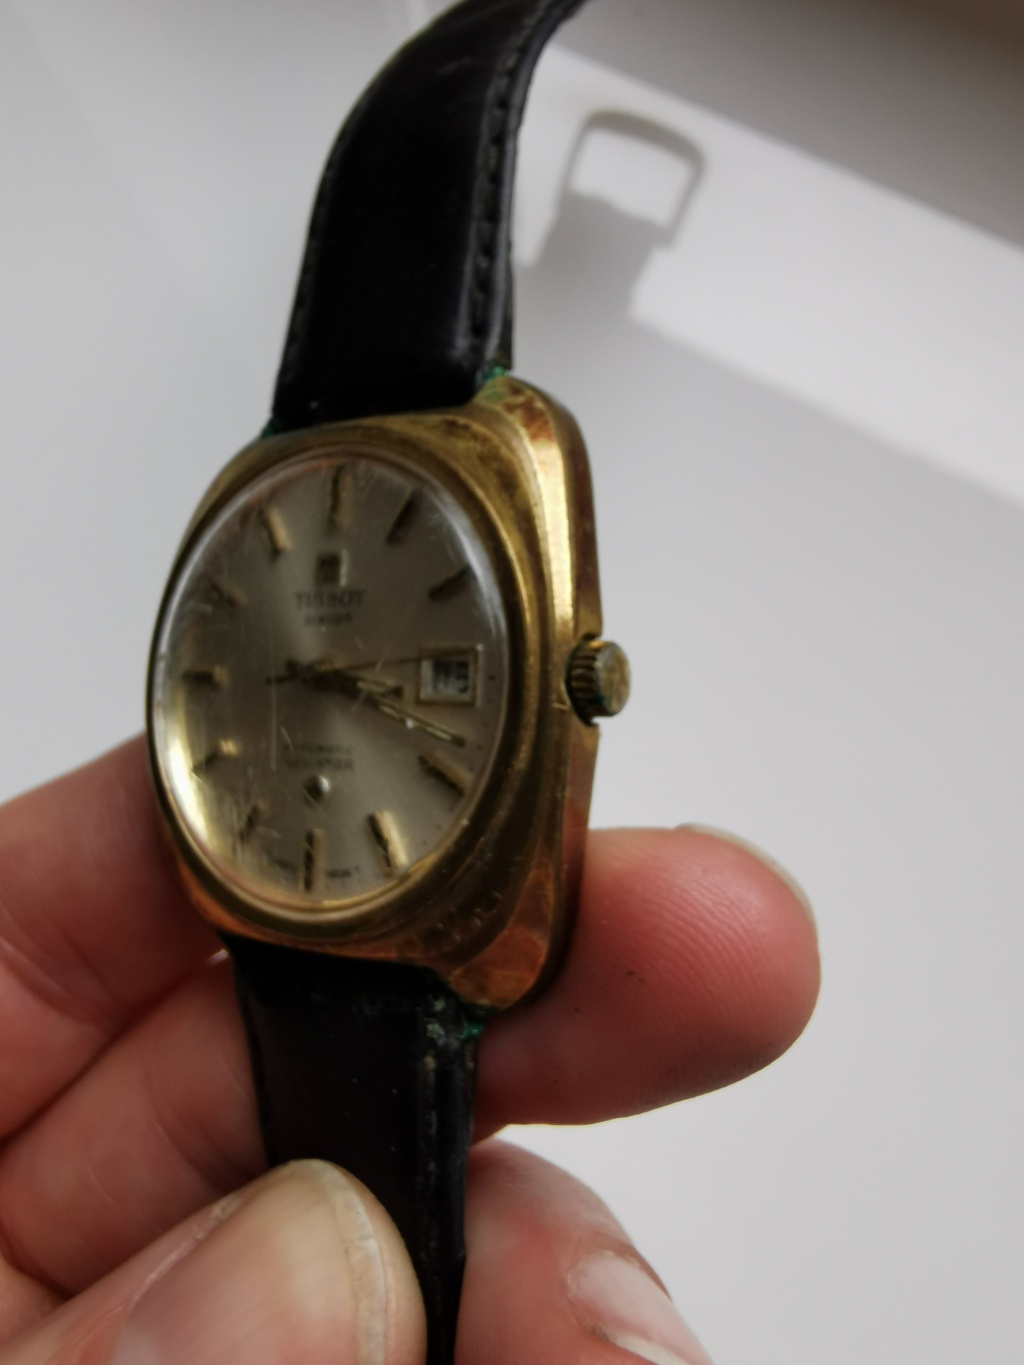 Volledige restauratie van een verguld Tissot horloge